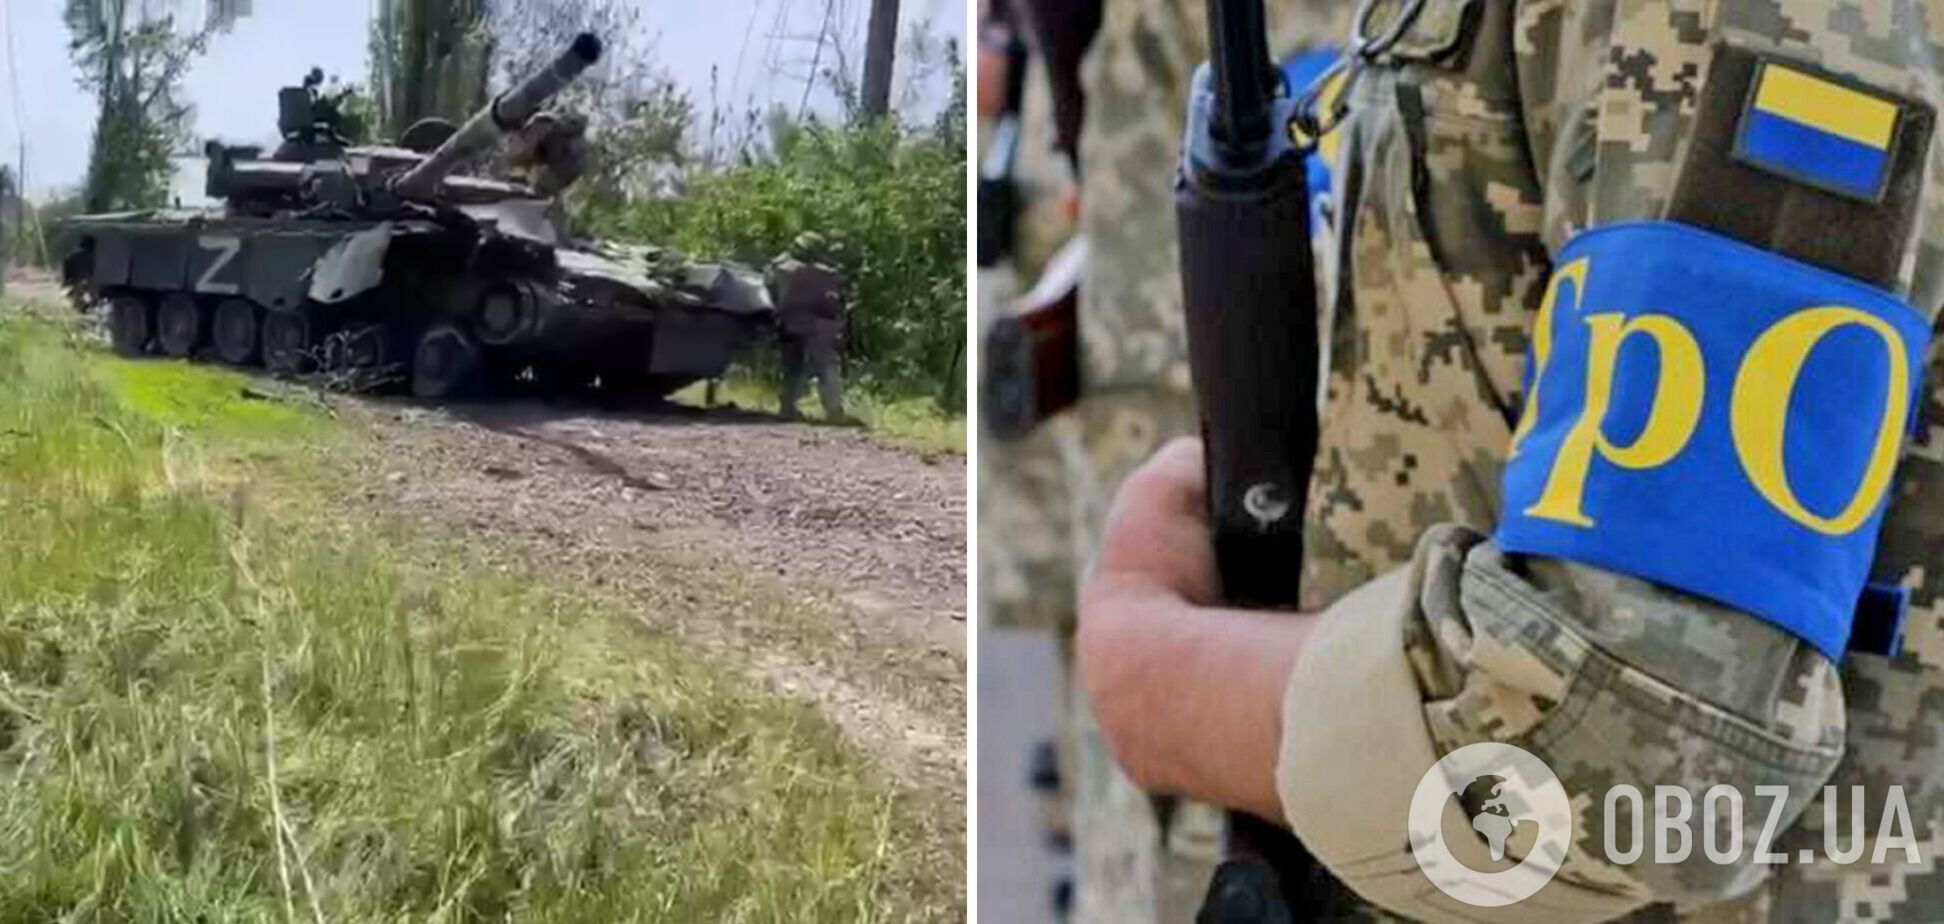 Уникальные кадры: украинские теробороновцы обезвредили вражеский танк, забросив внутрь гранату